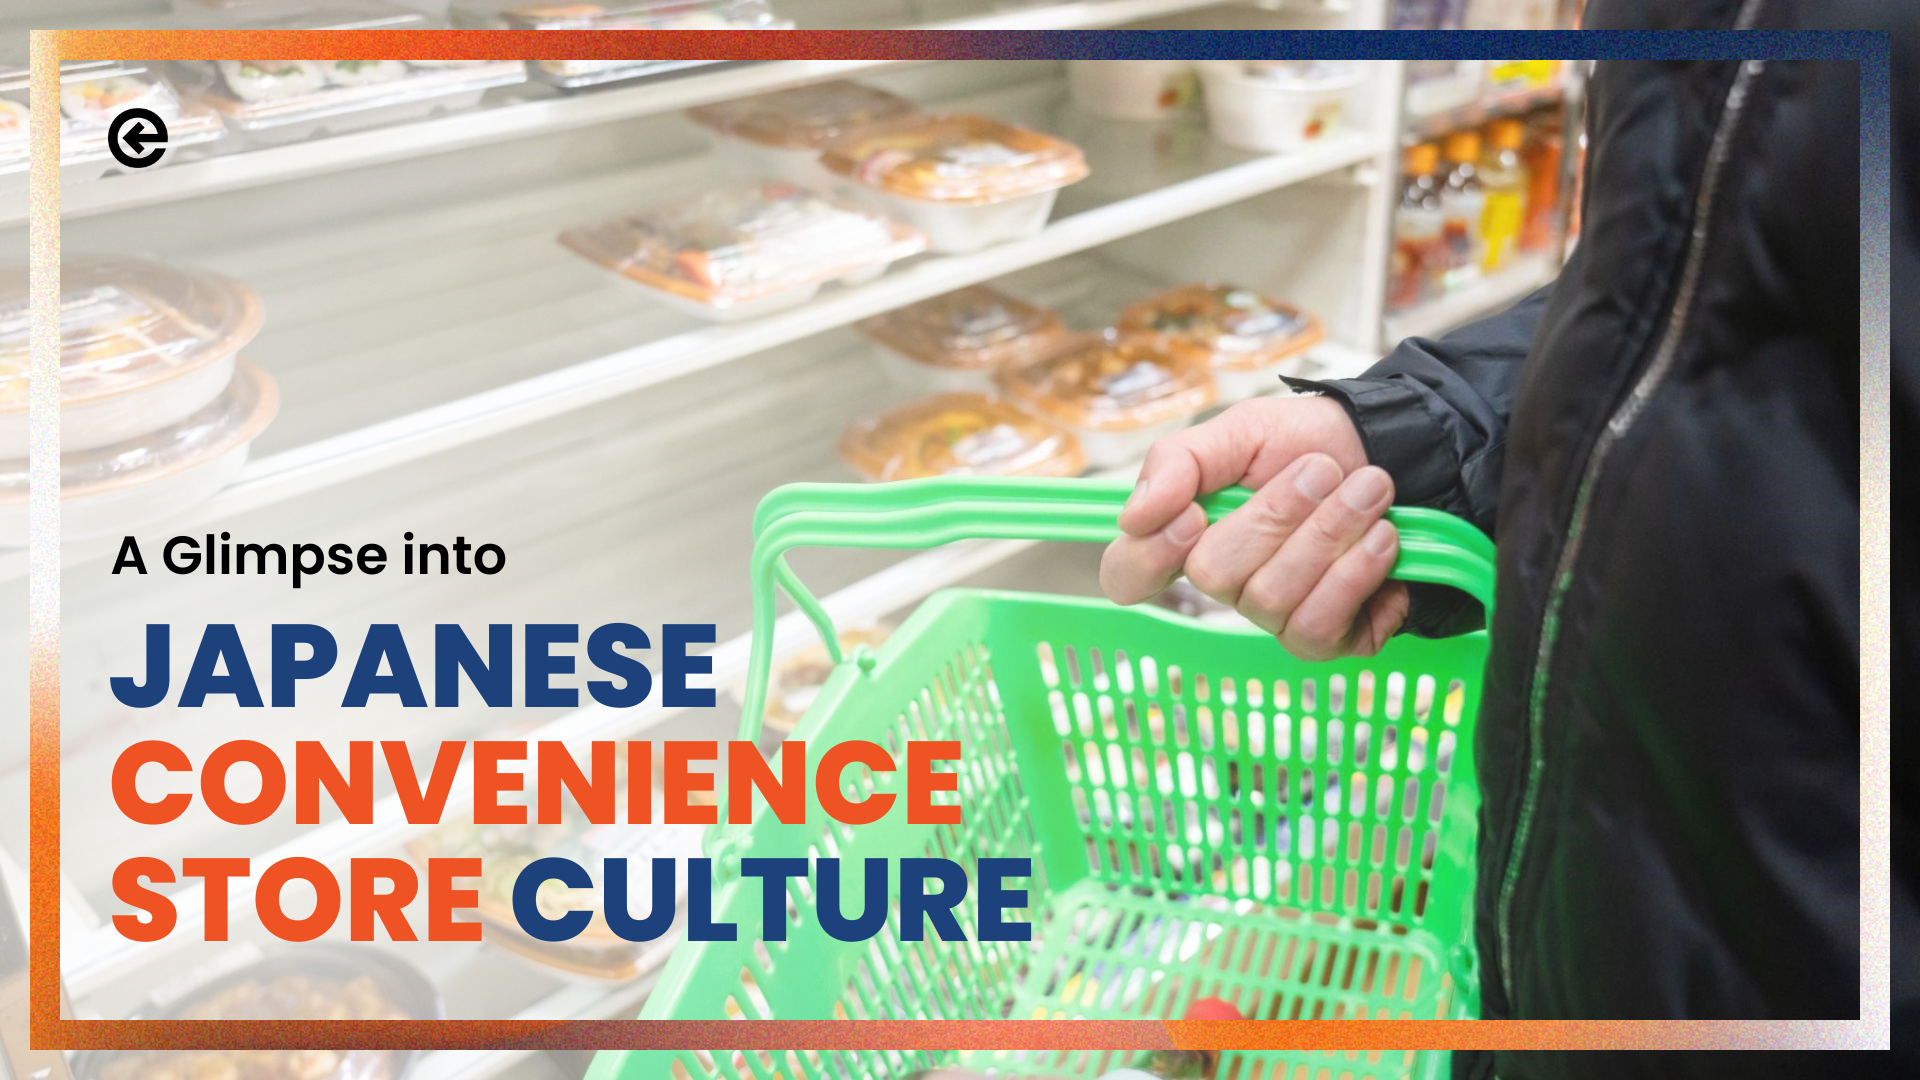 Ein Einblick in die japanische Convenience-Store-Kultur